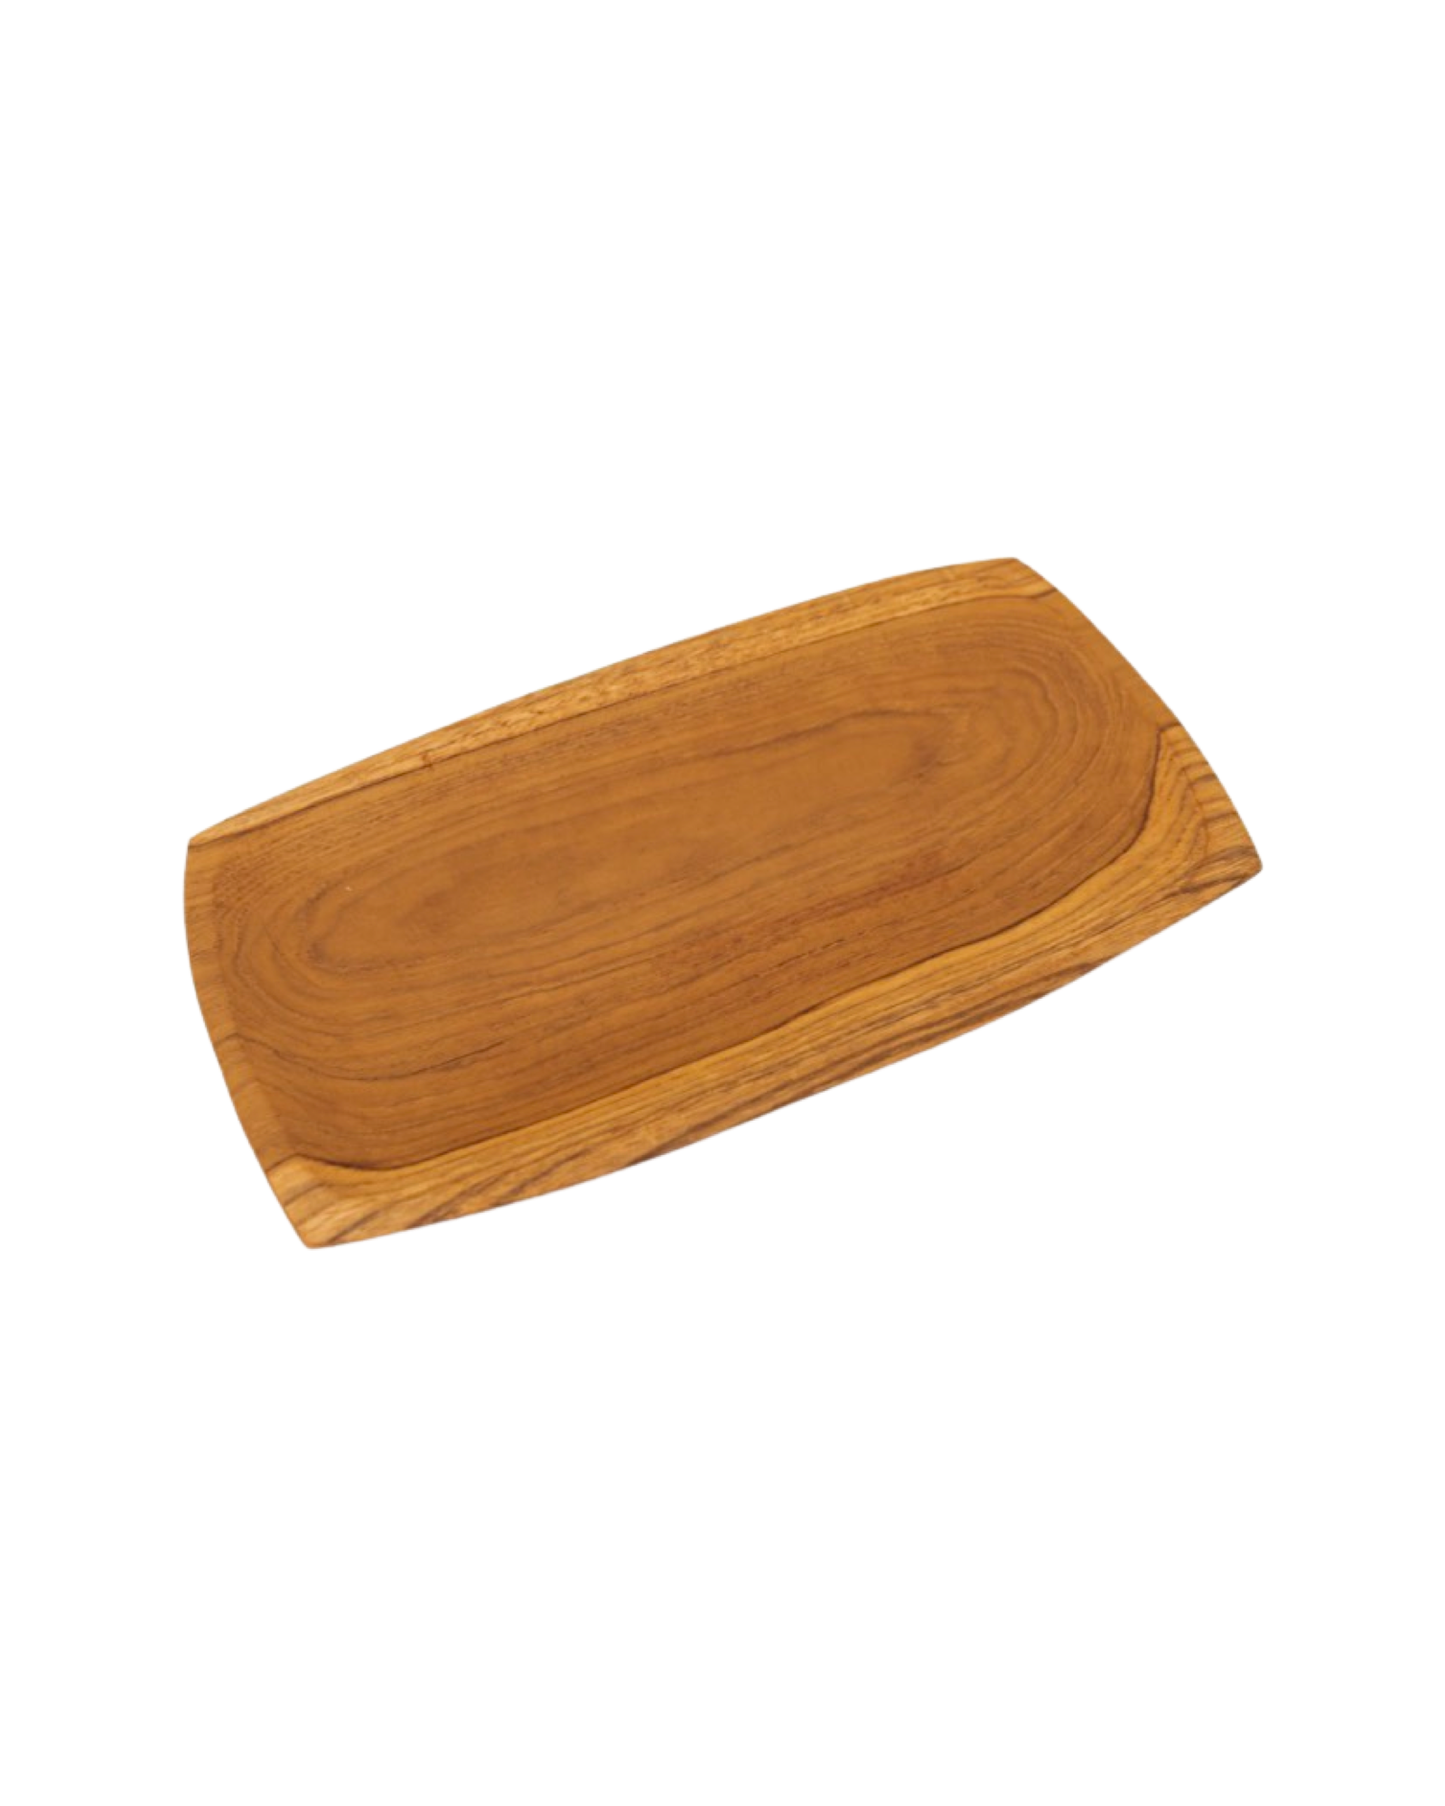 Teak Wood Serving Platter Set 4